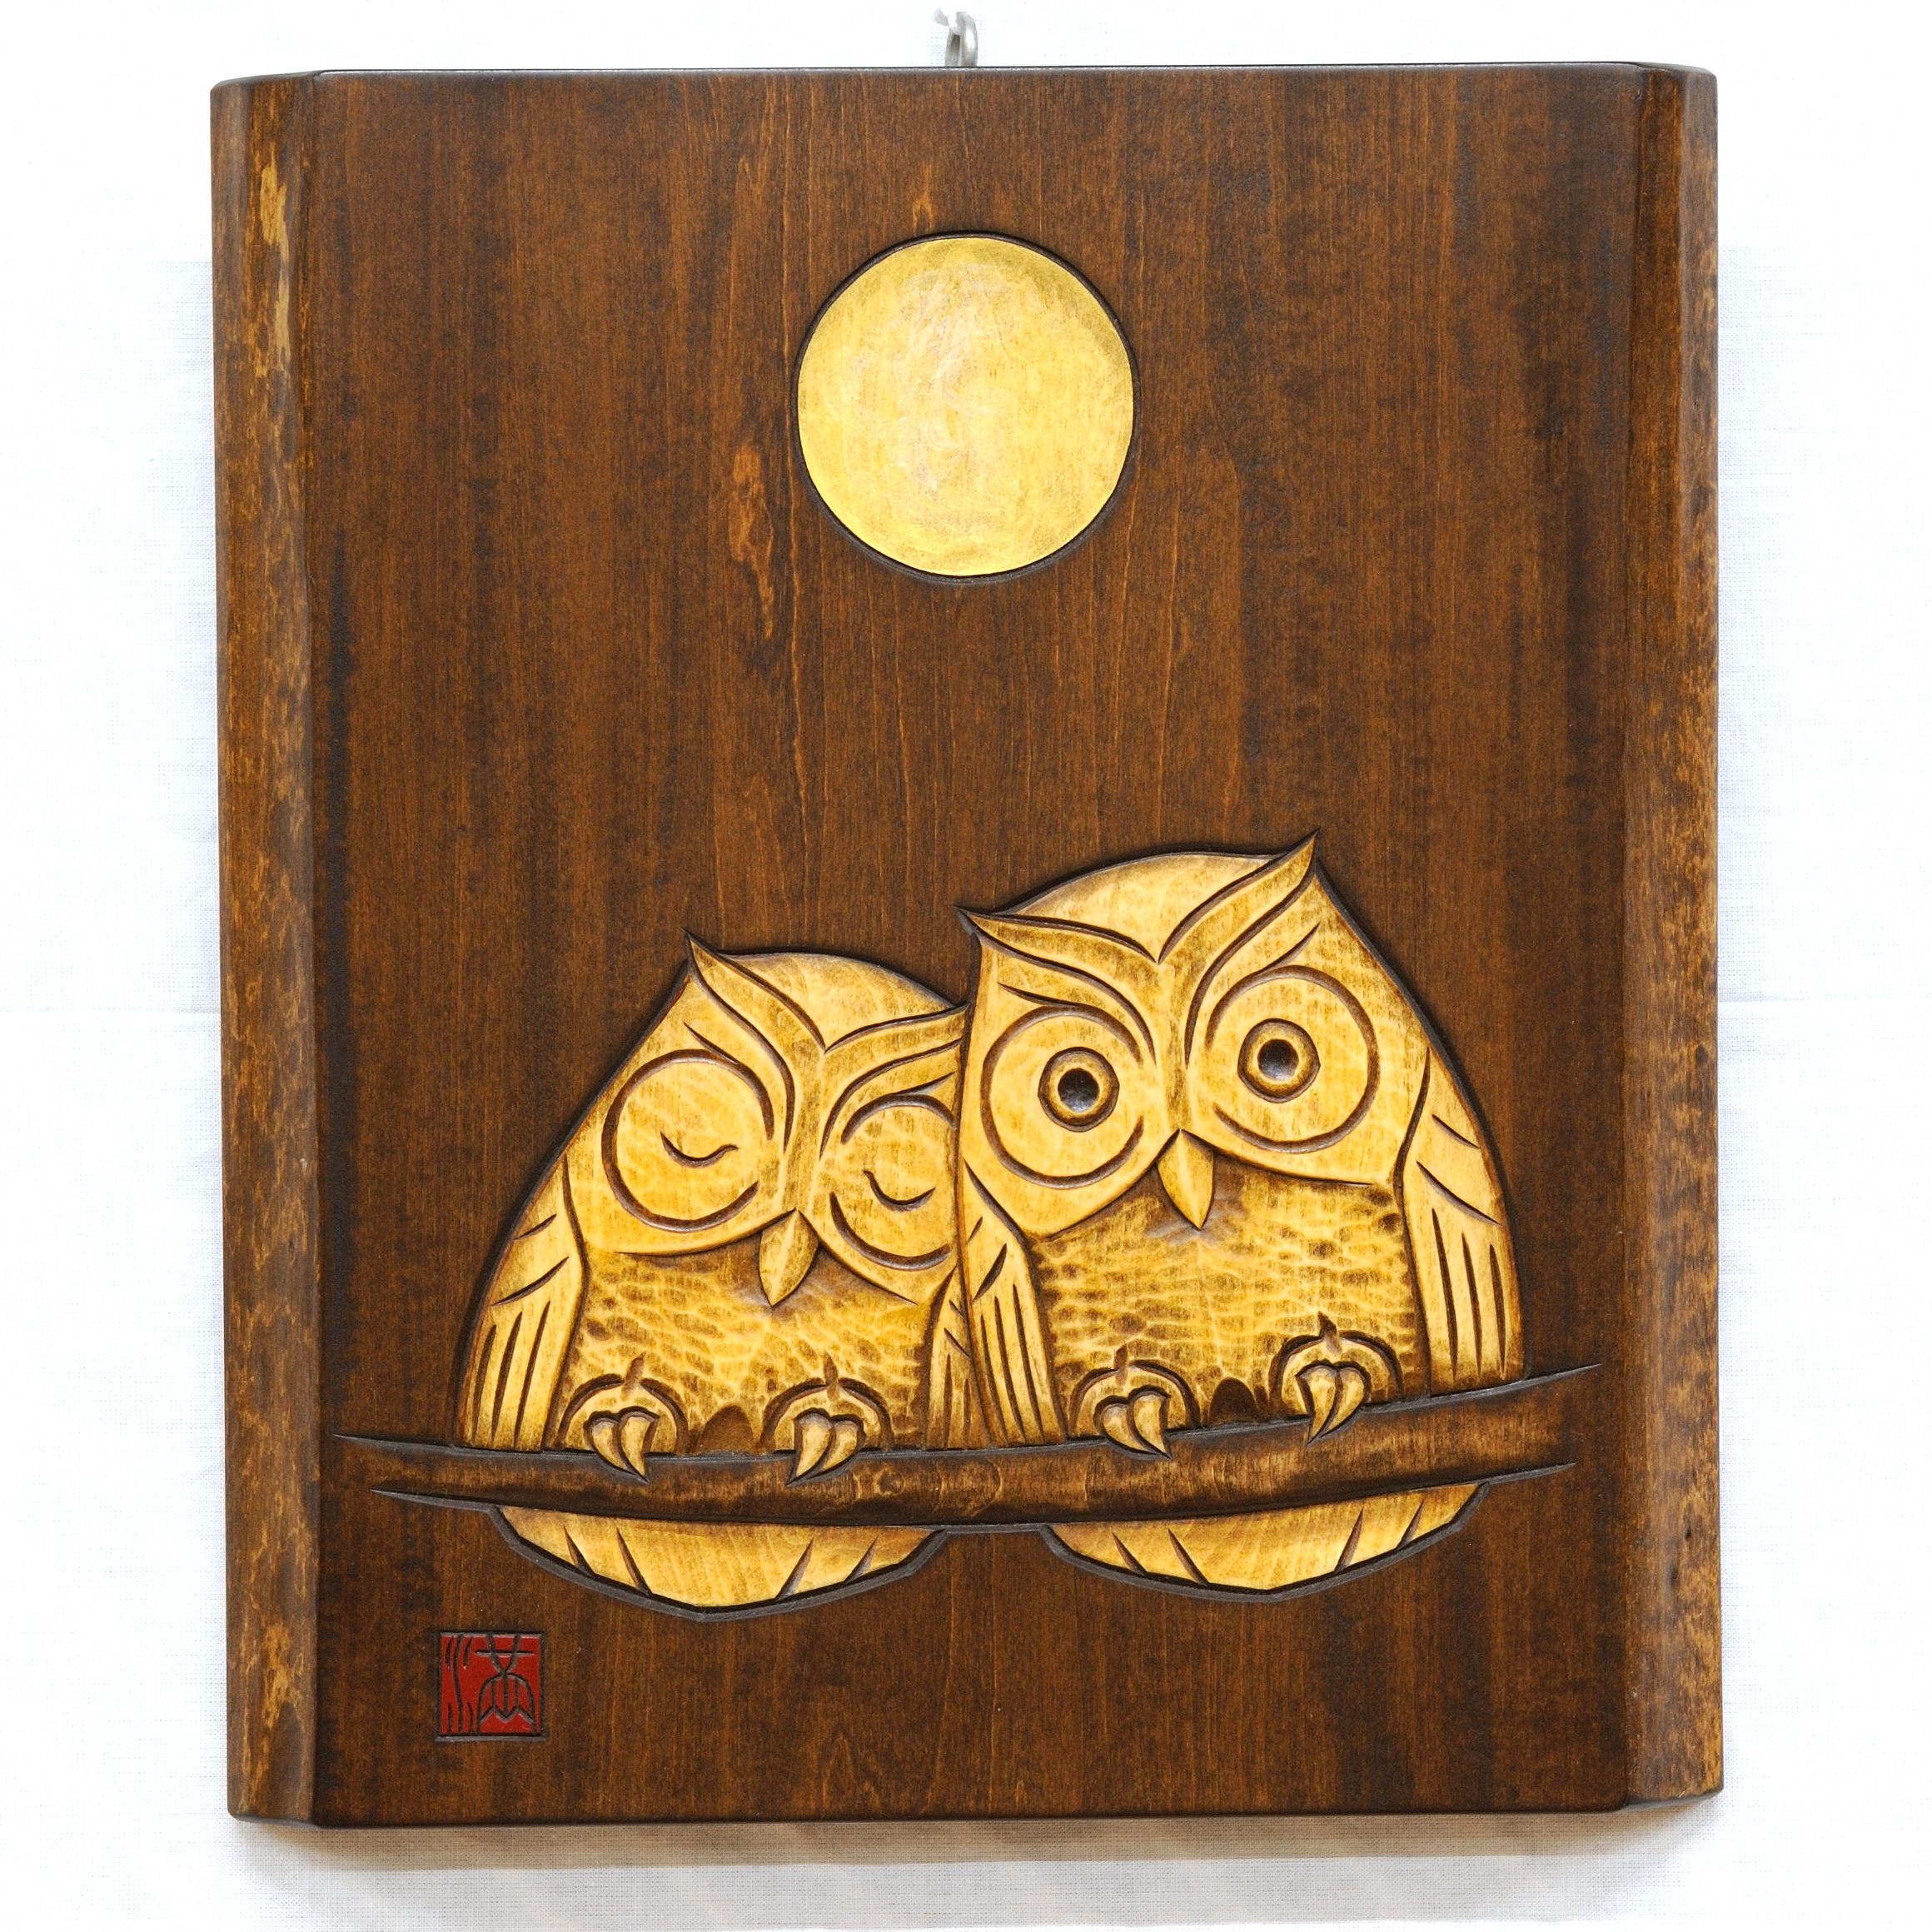 ふくろう飾り板 No11 | ギャラリーまきの 信州の木製品と美術工芸品販売の民芸店